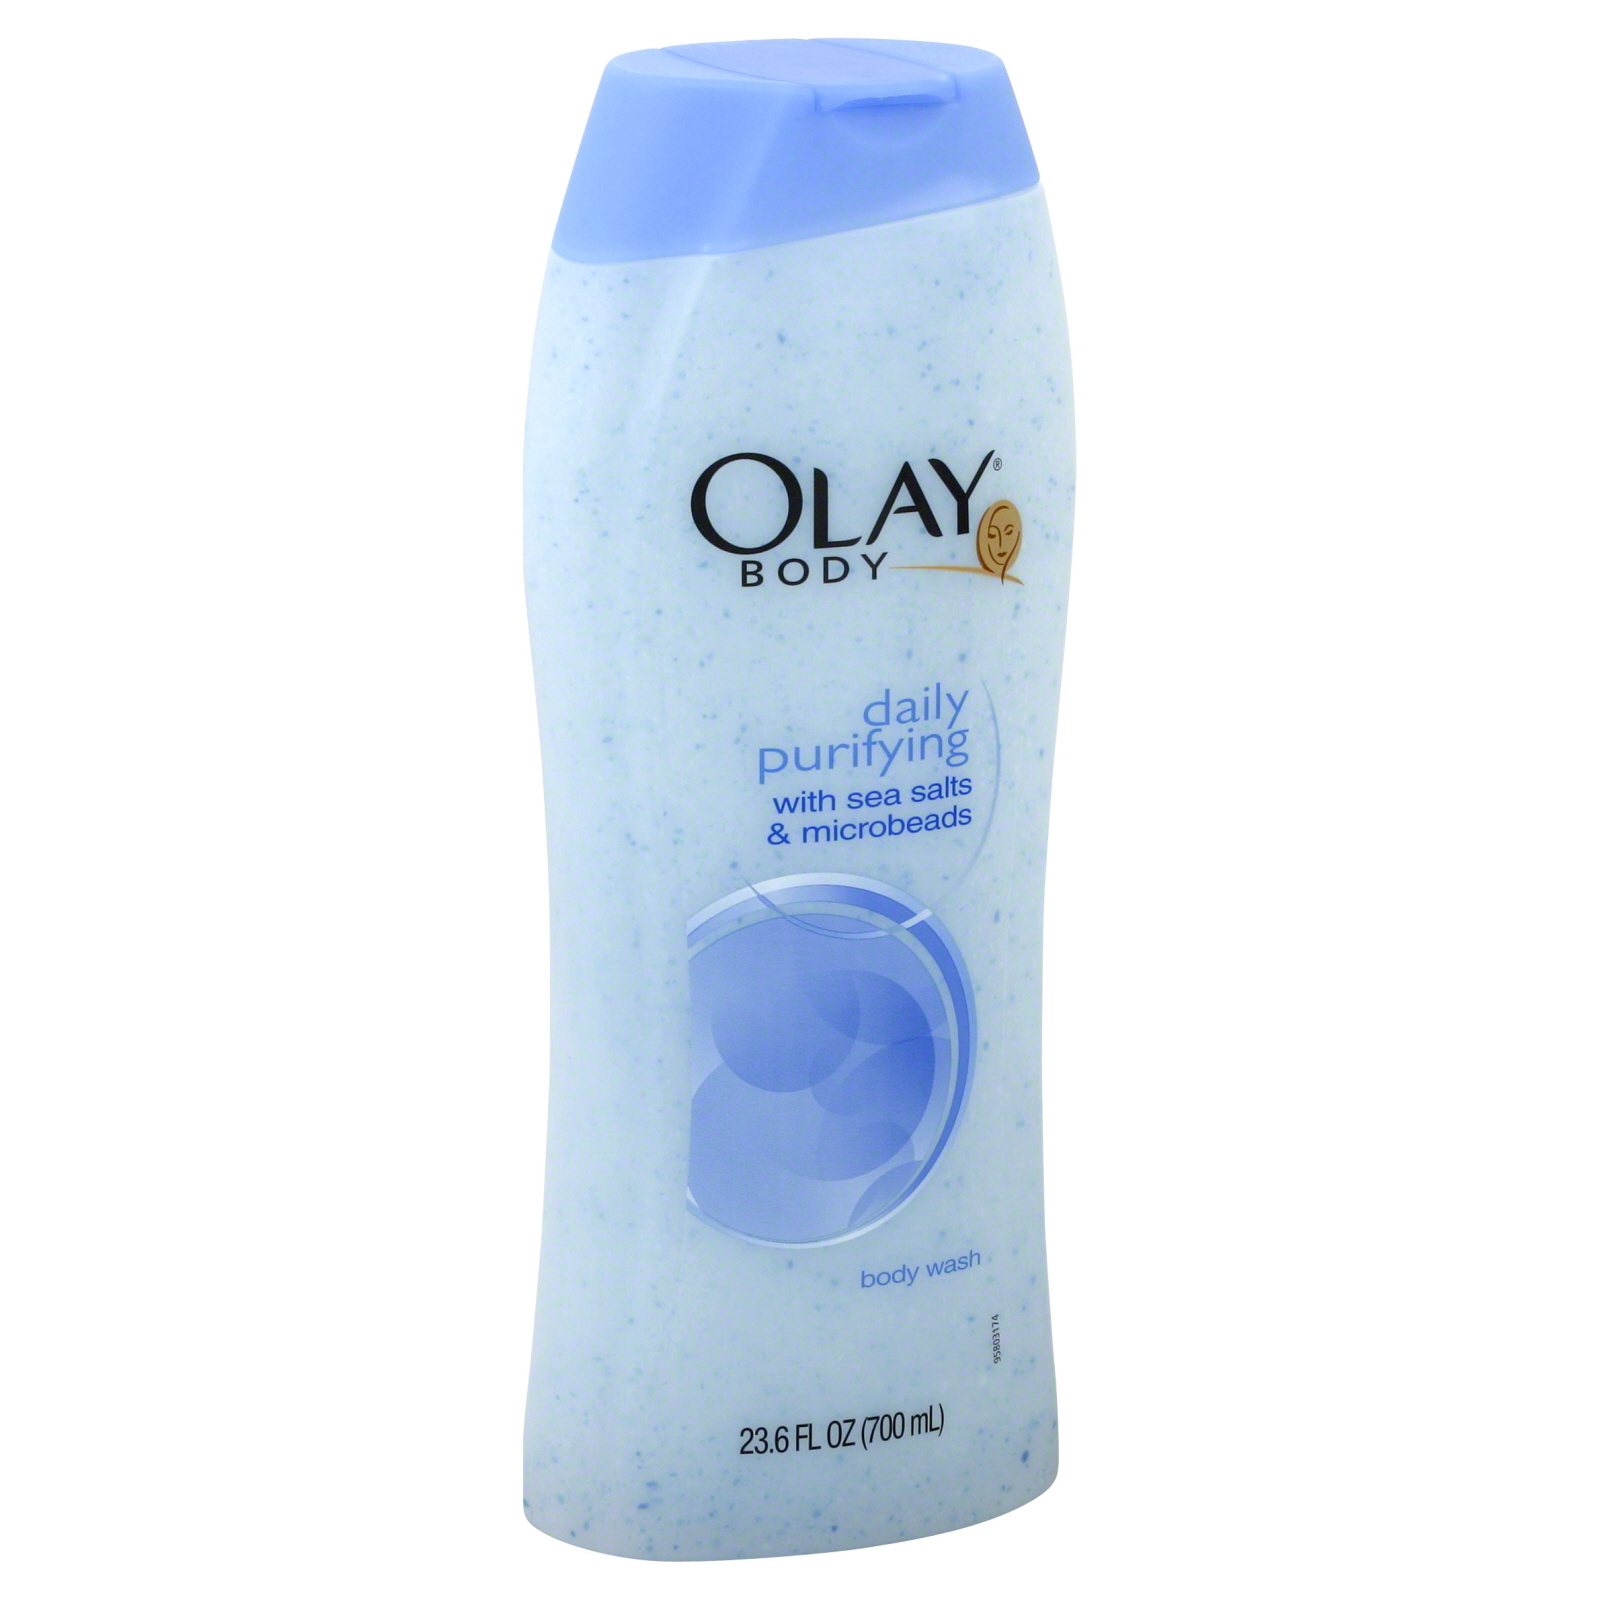 Olay Body Body Wash, Daily Purifying, 23.6 fl oz (700 ml)